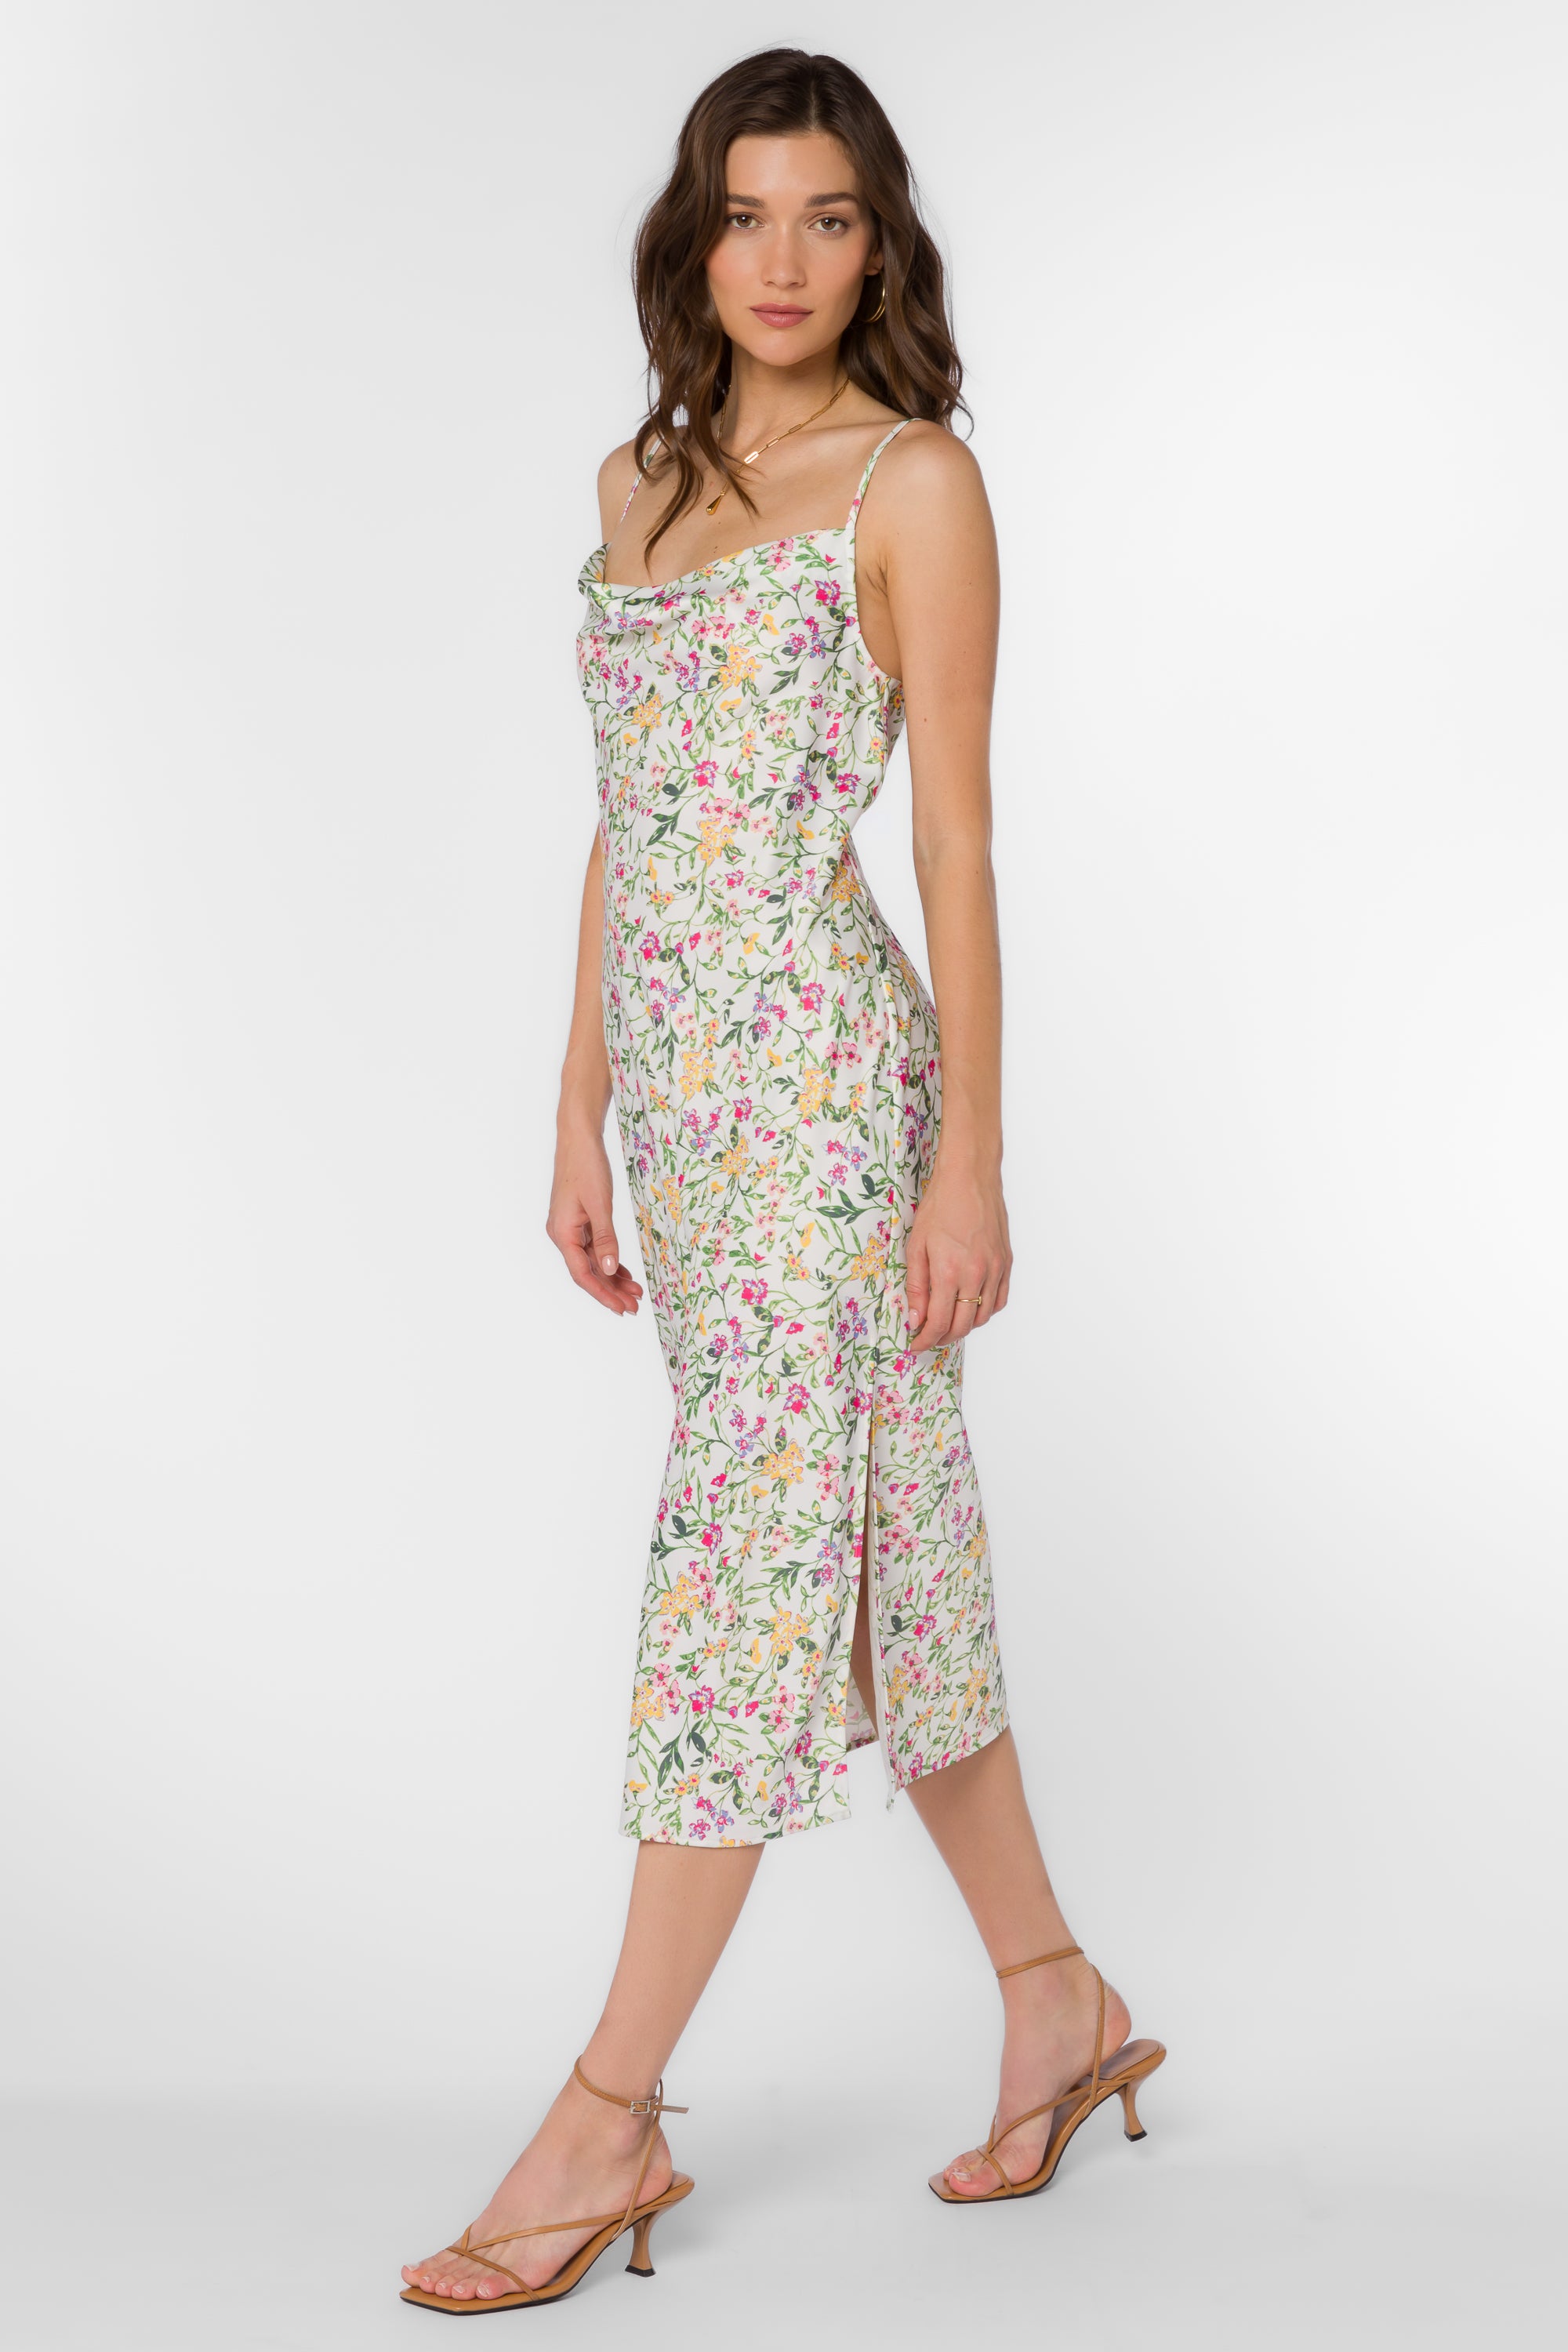 Talullah Spring Ivy Dress - Dresses - Velvet Heart Clothing